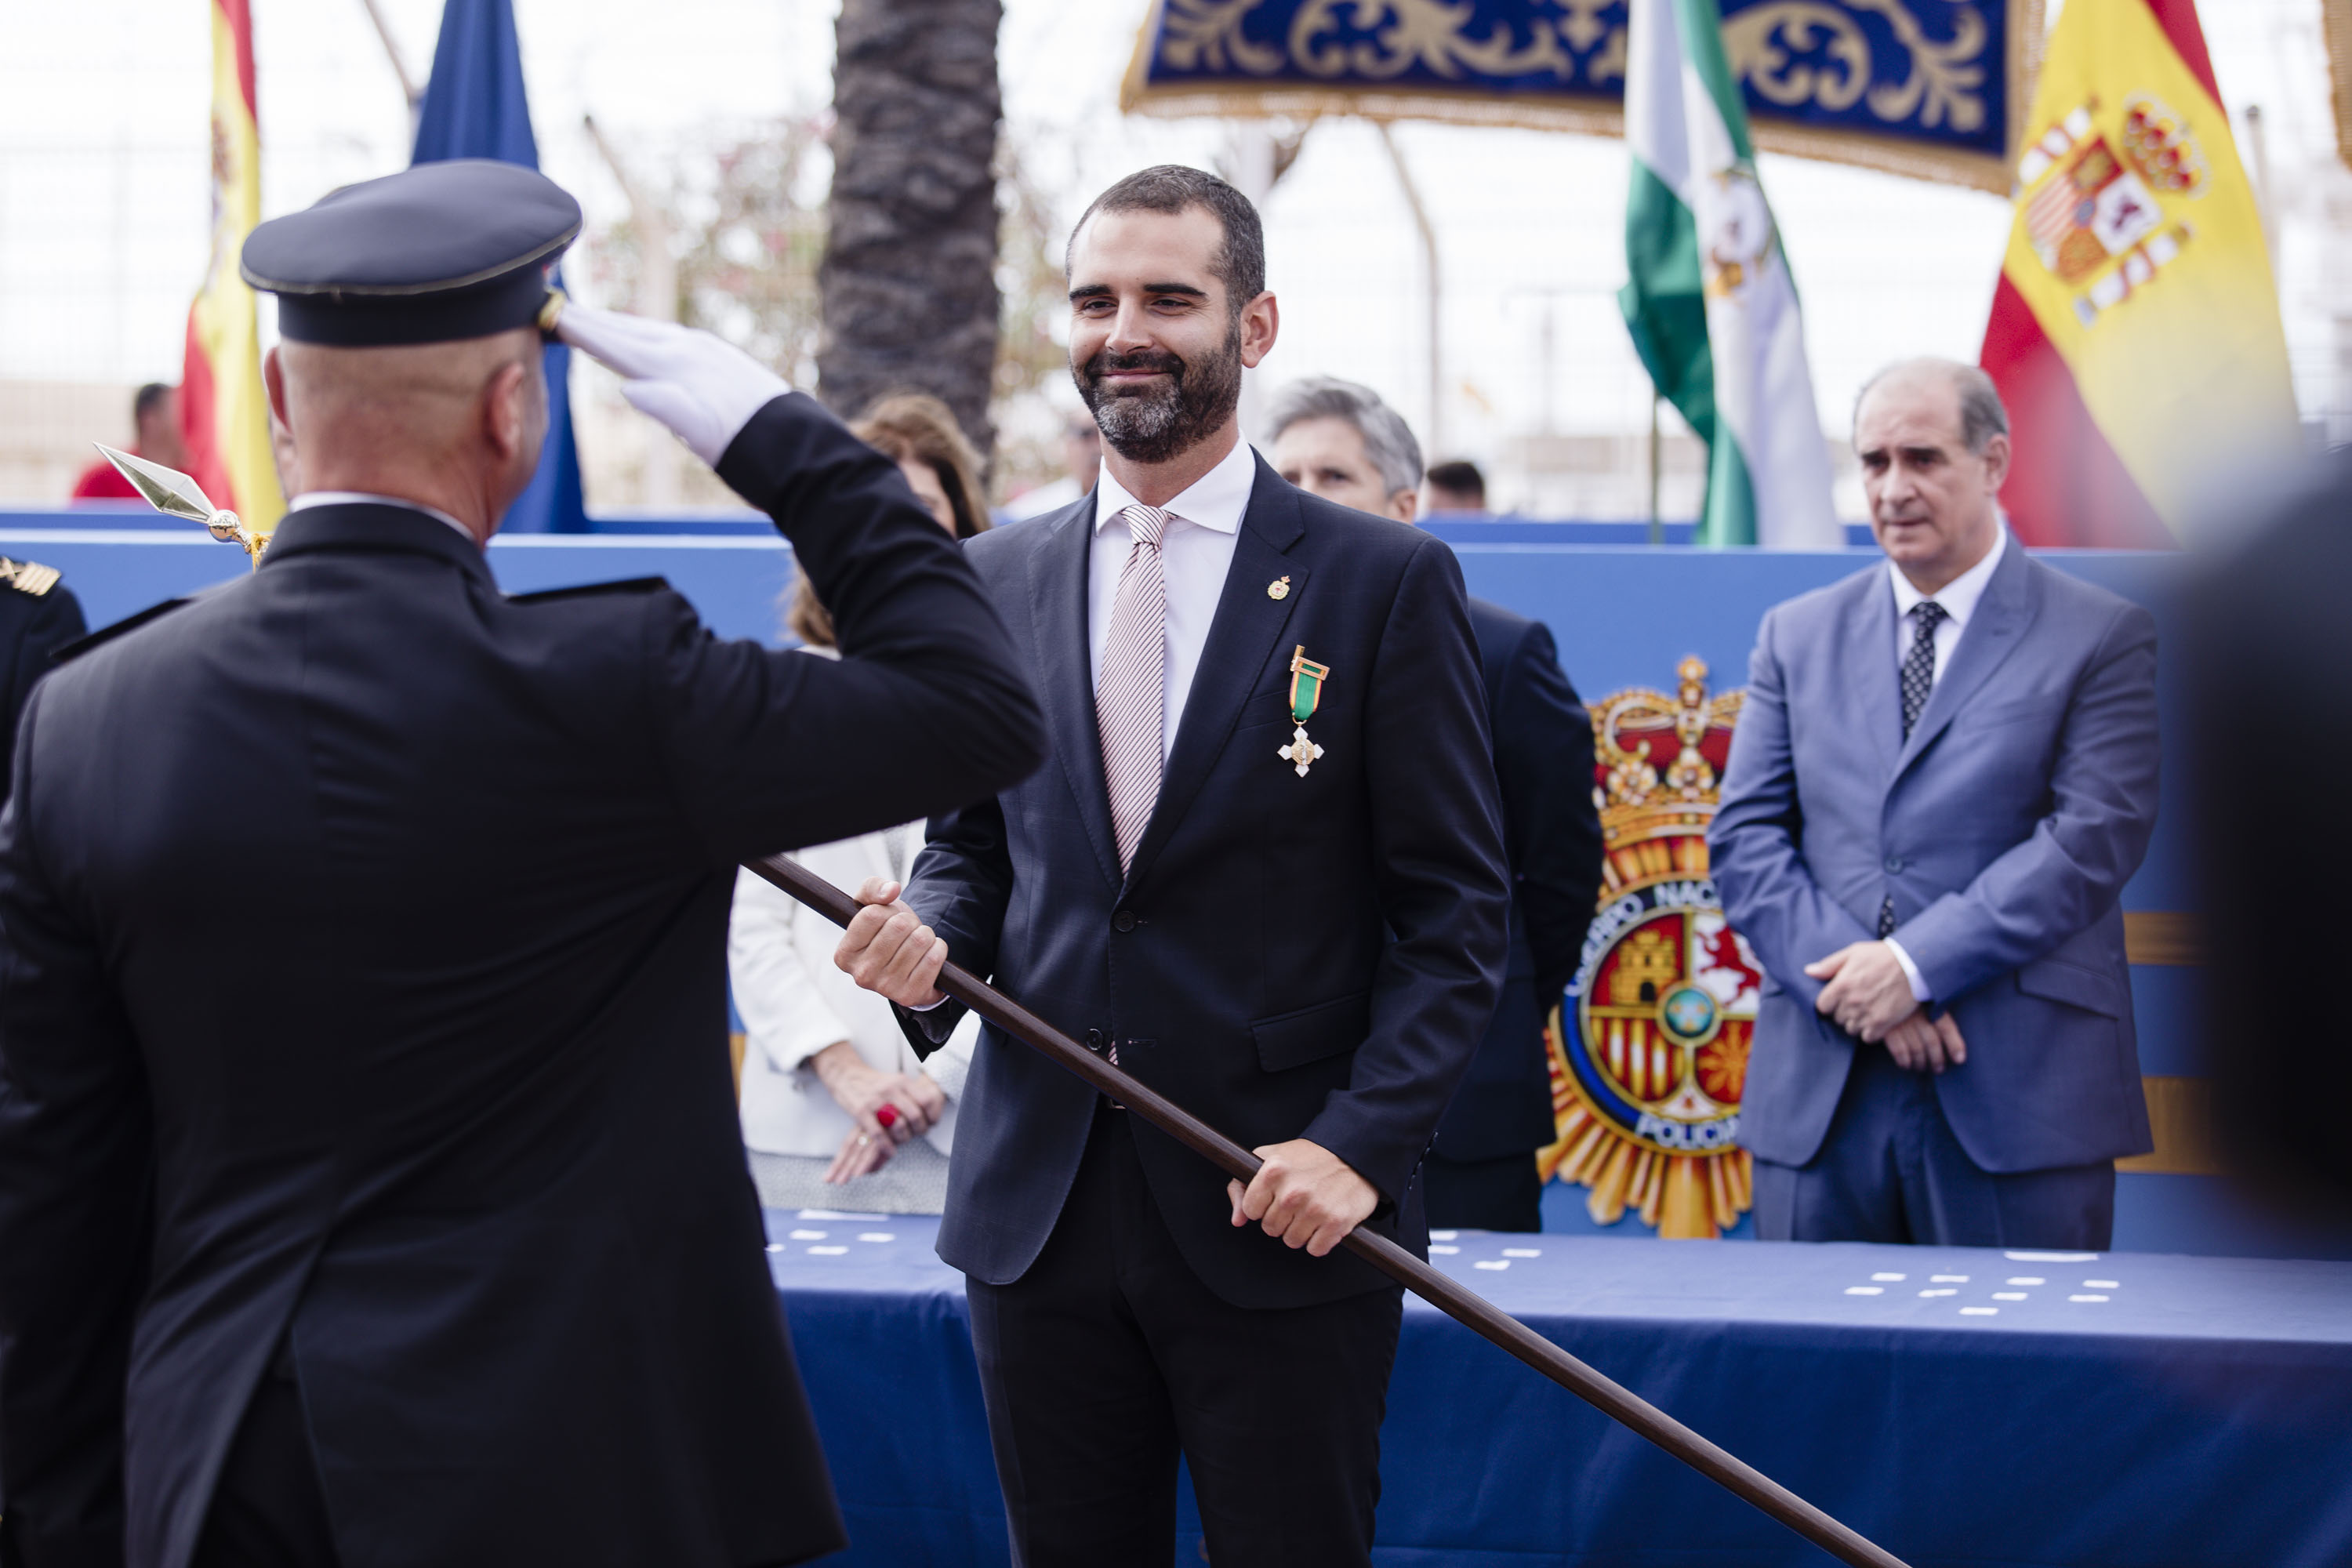 El alcalde recibe la medalla al mérito policial con distintivo blanco y lo hace “en nombre de Almería, una ciudad orgullosa y agradecida a la Policía”